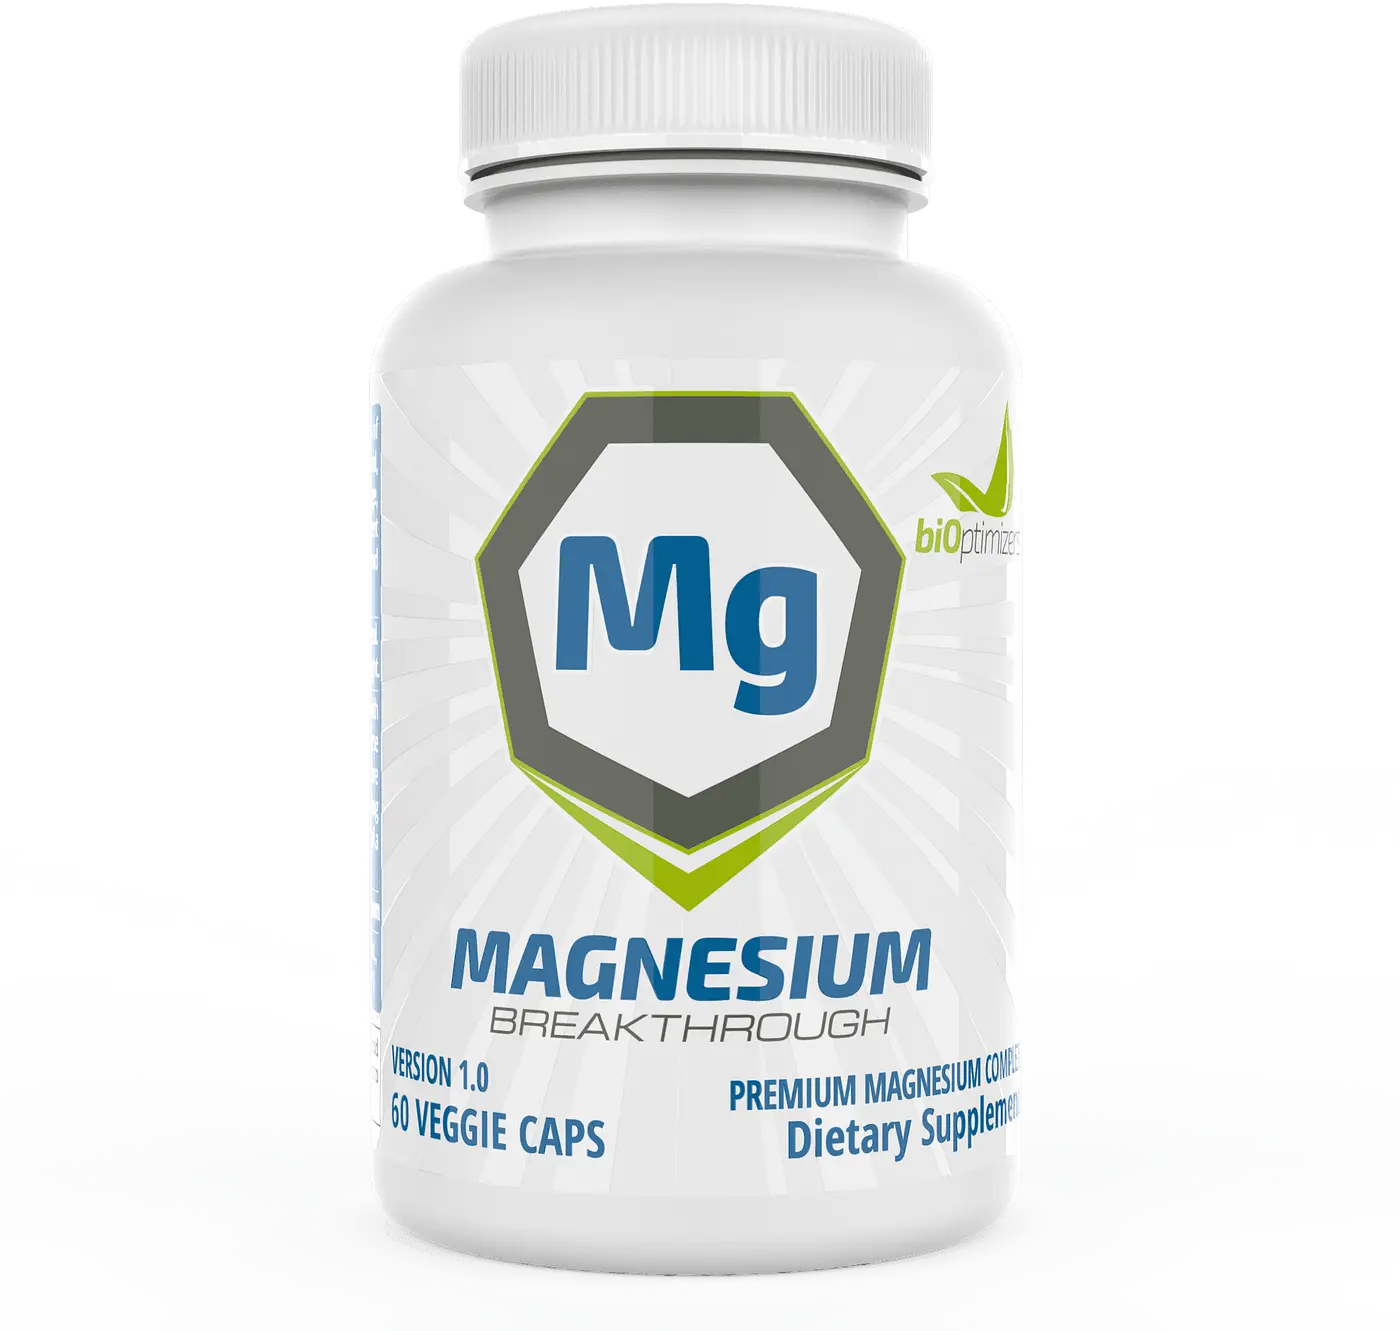 Bioptimizers Magnesium Breakthrough Results